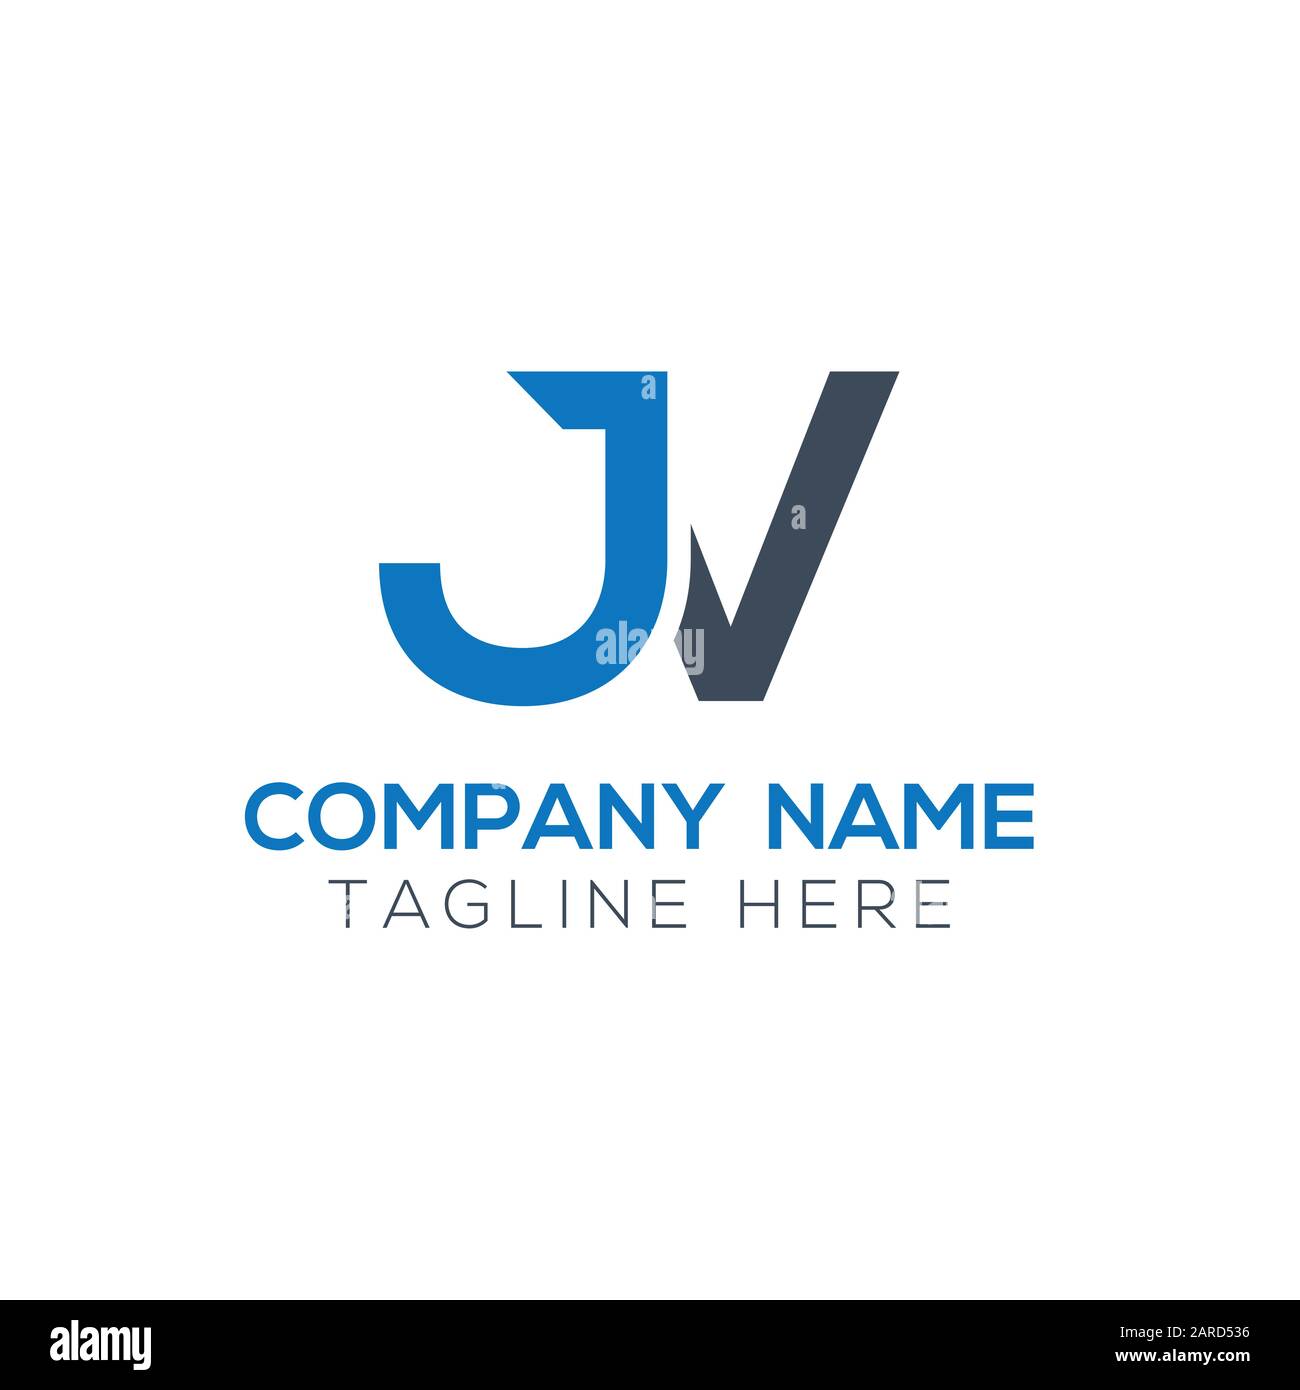 Jv Logo PNG Transparent Images Free Download, Vector Files